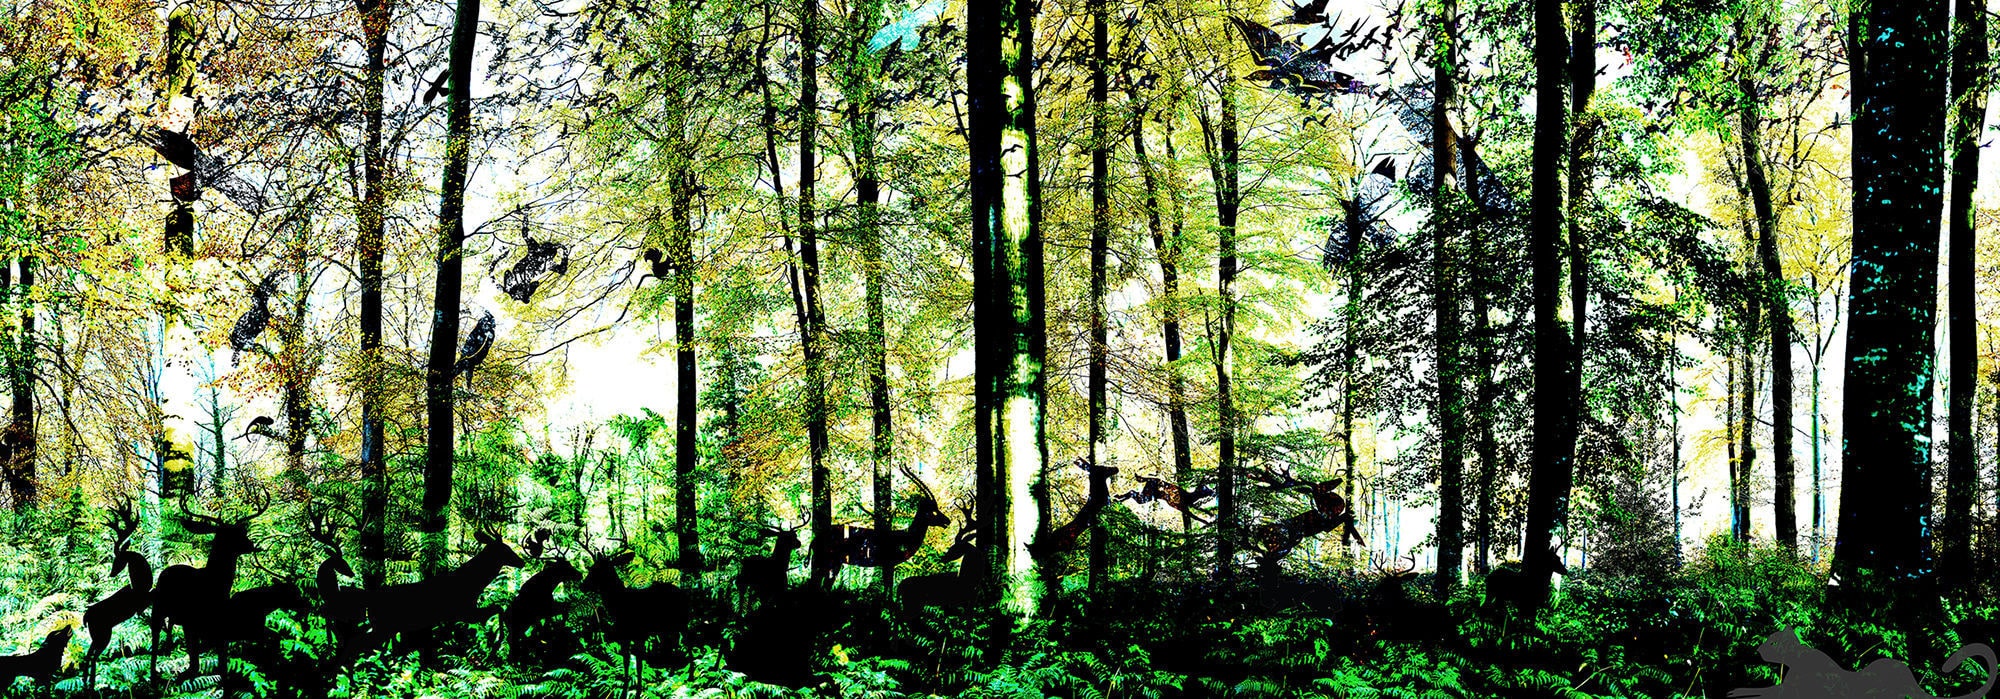 Original Design Wallpaper / Nature Pattern / Green - Spruce-fir Forest , HD Wallpaper & Backgrounds